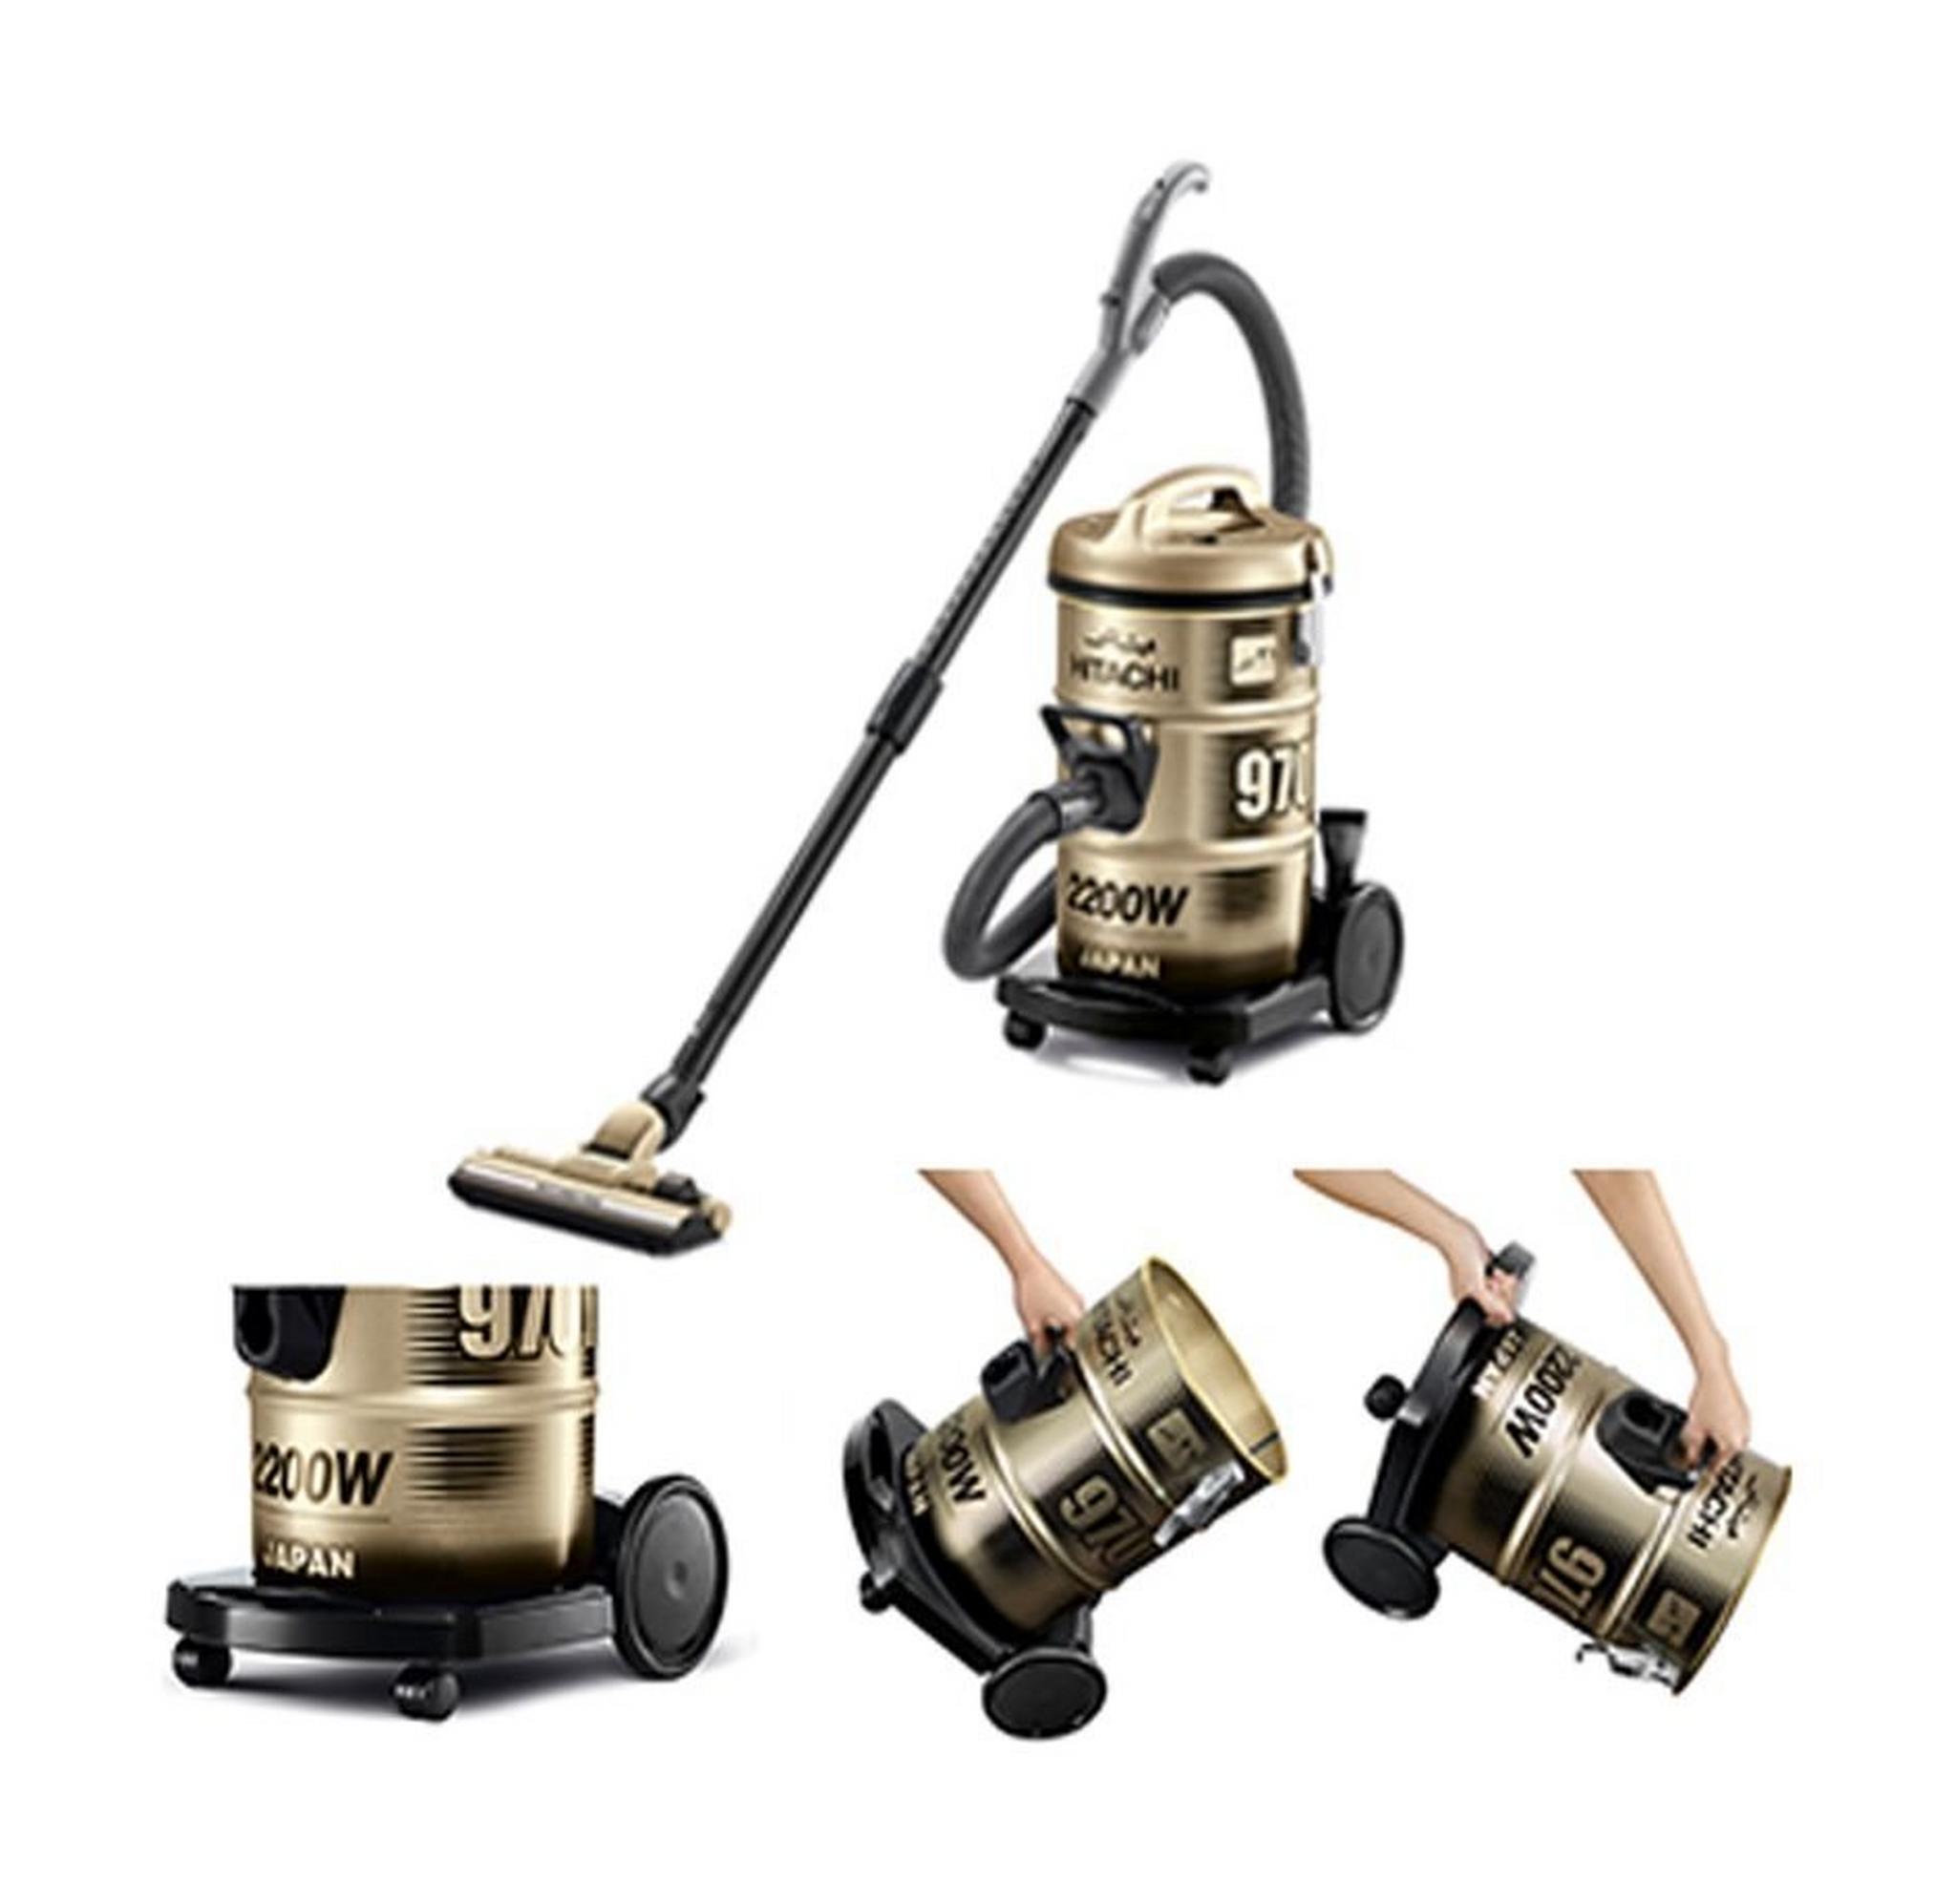 Hitachi 2200W 21L Drum Vacuum Cleaner (CV-970Y) – Gold